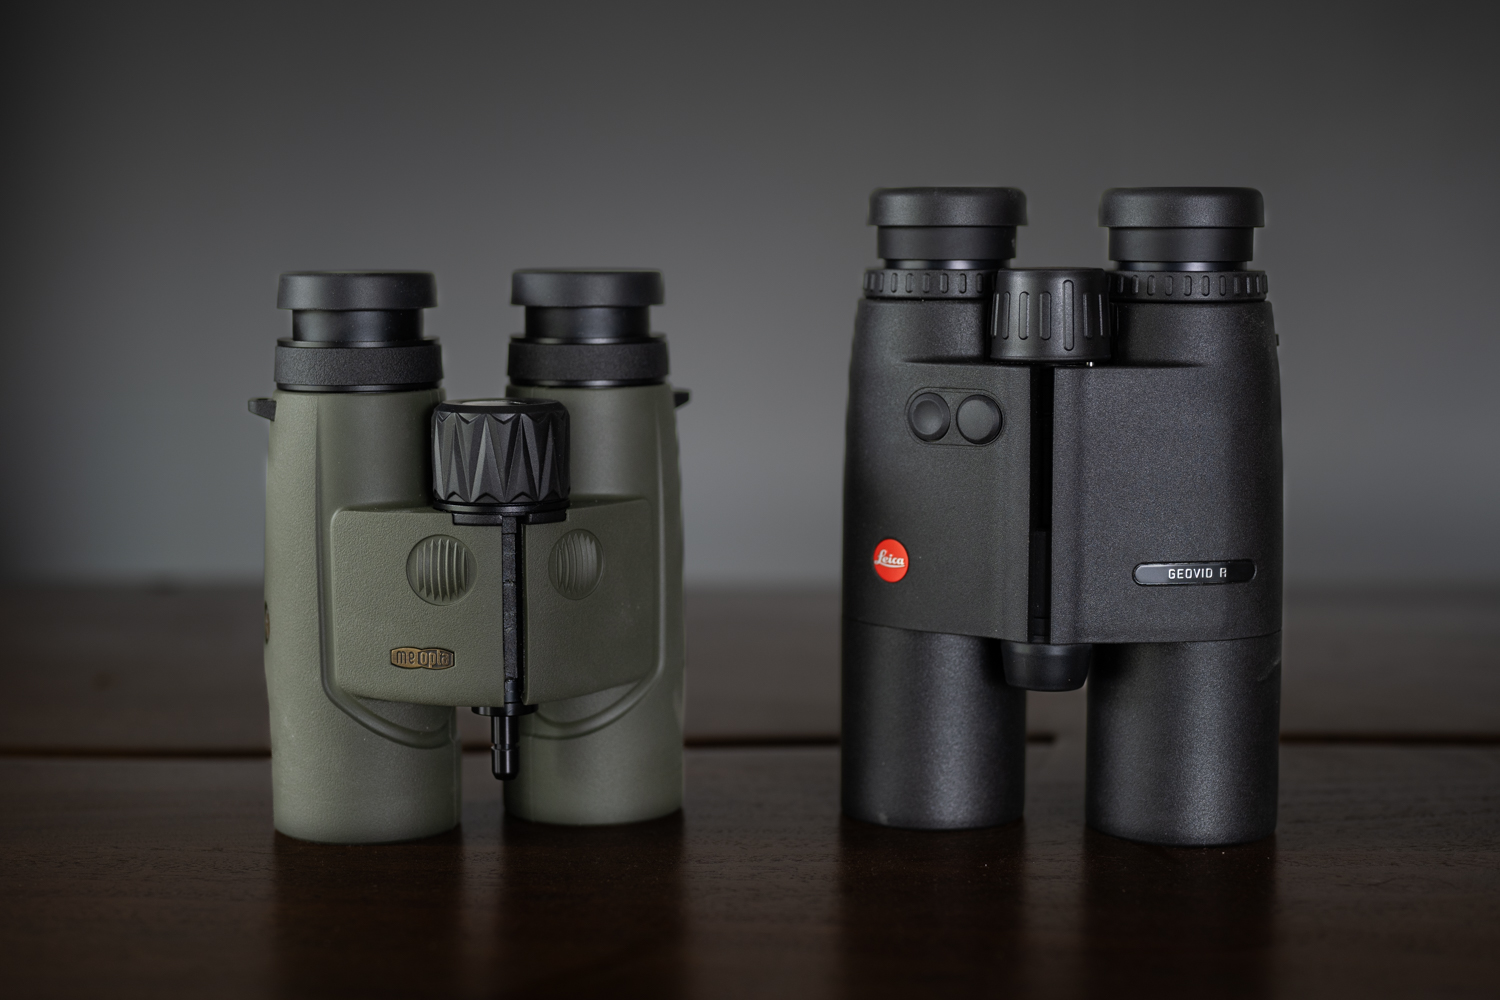 Meopta Optika LR VS Leica Geovid R Binoculars